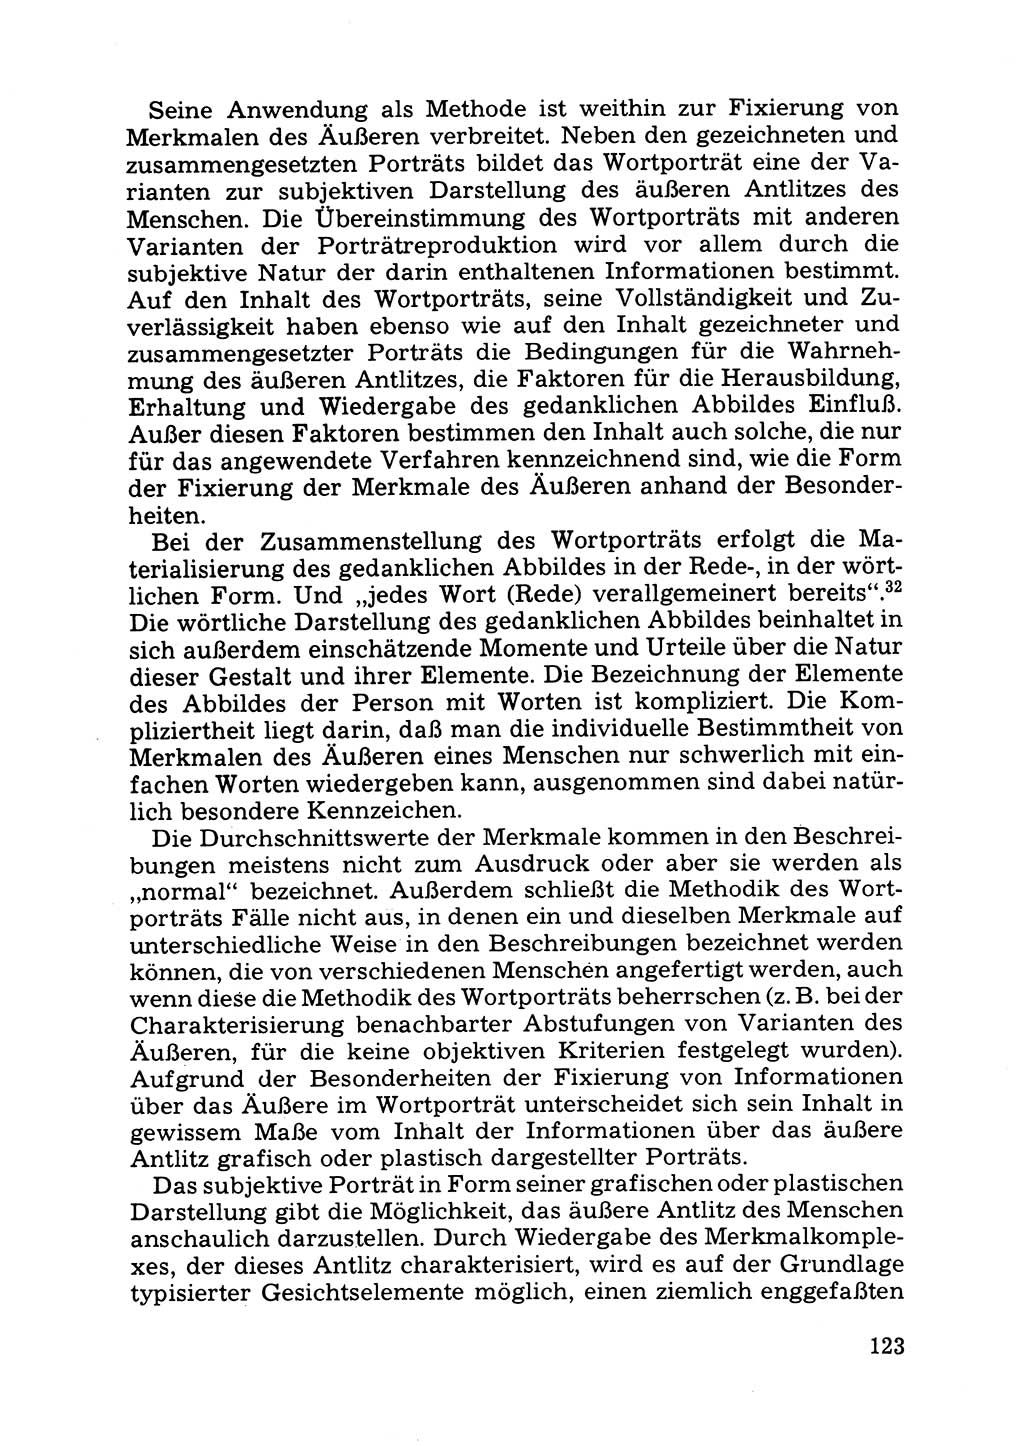 Das subjektive Porträt [Deutsche Demokratische Republik (DDR)] 1981, Seite 123 (Subj. Port. DDR 1981, S. 123)